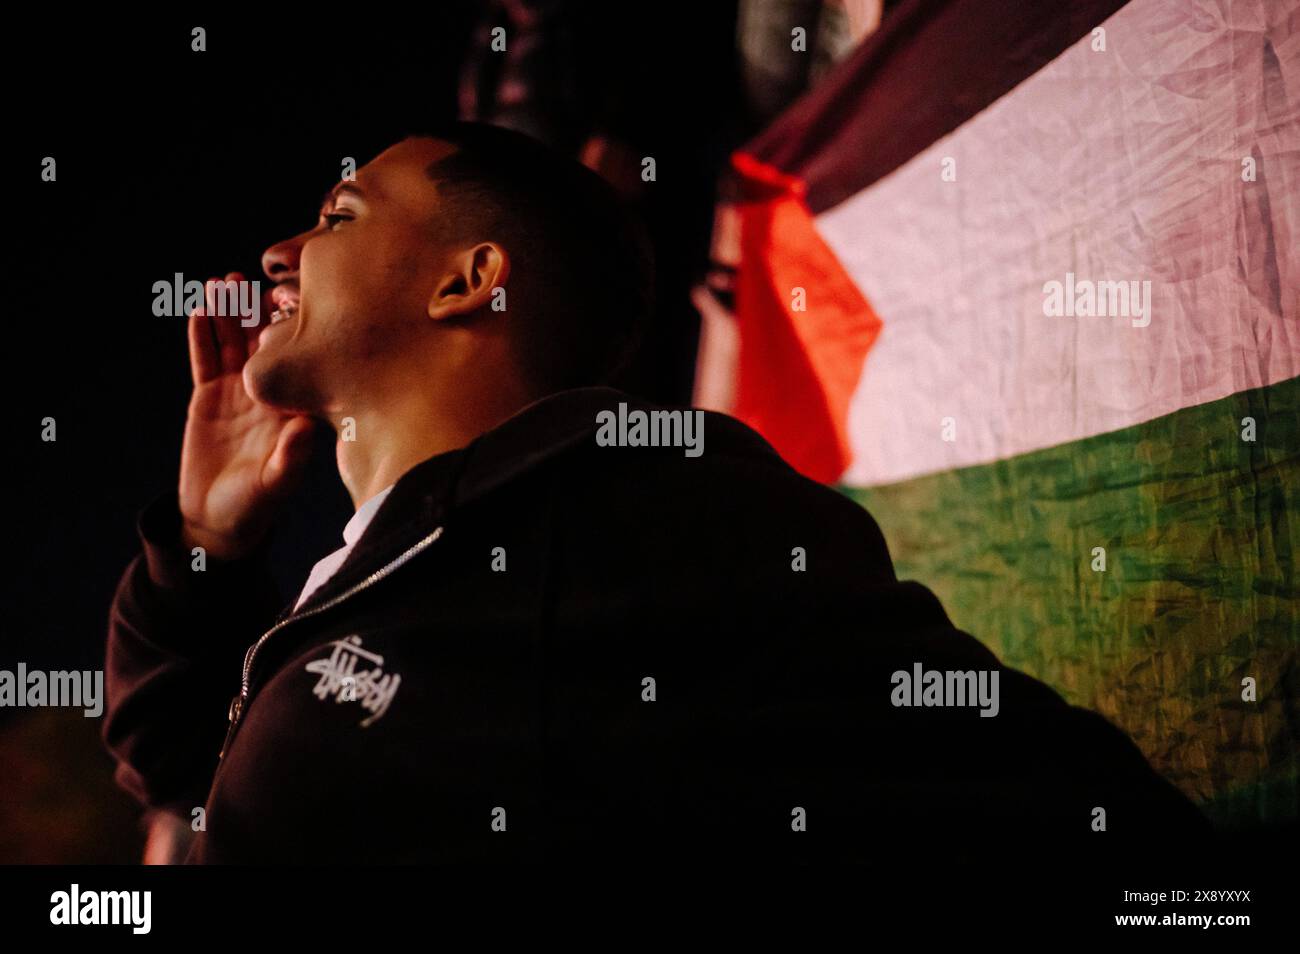 Jan Schmidt-Whitley/le Pictorium - dimostrazione a sostegno della Palestina - 27/05/2024 - Francia / Parigi / Parigi - Un giovane di fronte a una bandiera palestinese. Oltre 10.000 persone si sono riunite spontaneamente a Parigi in seguito al bombardamento dell'esercito israeliano di una zona umanitaria a Rafah nella Striscia di Gaza, uccidendo decine di civili e bambini nel campo di Tell al-Sultan gestito dall'UNRWA. Foto Stock